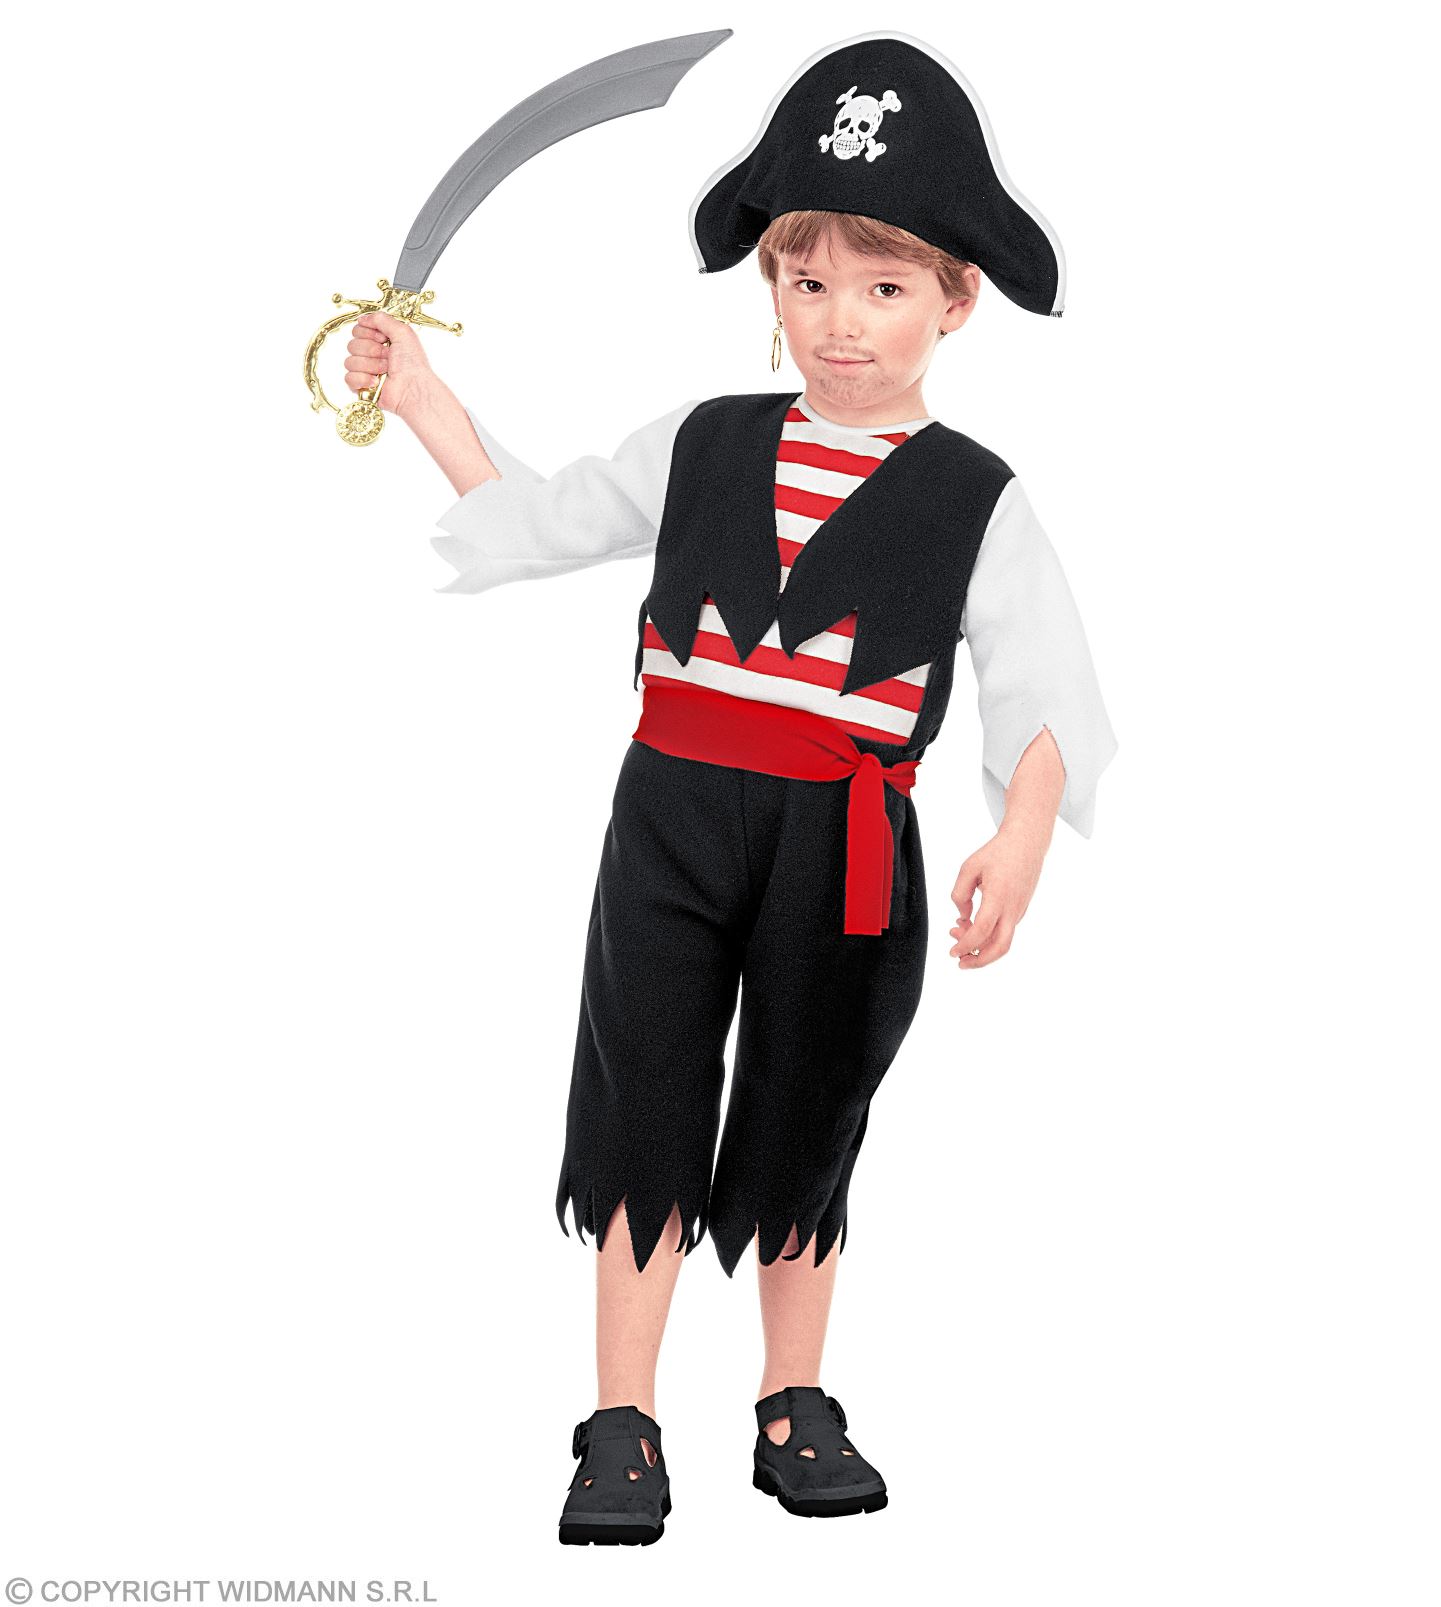 Verkleidung Piratenkostüm Kinderkofferset Piraten Piratenset Kinder 